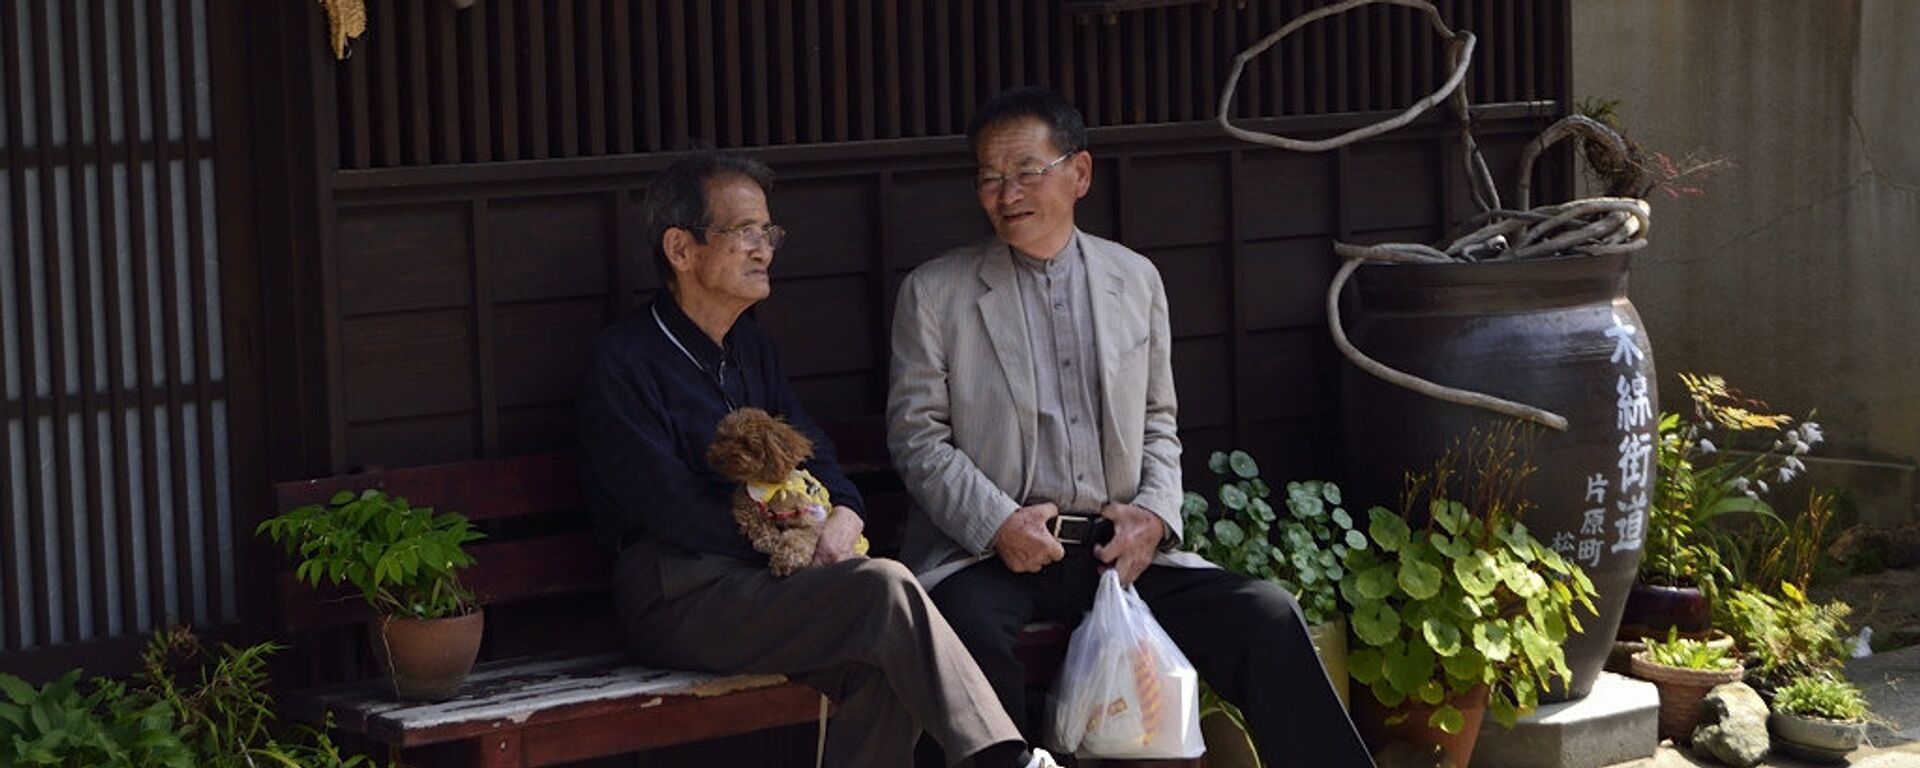 Elderly people in Japan - Sputnik International, 1920, 21.08.2016